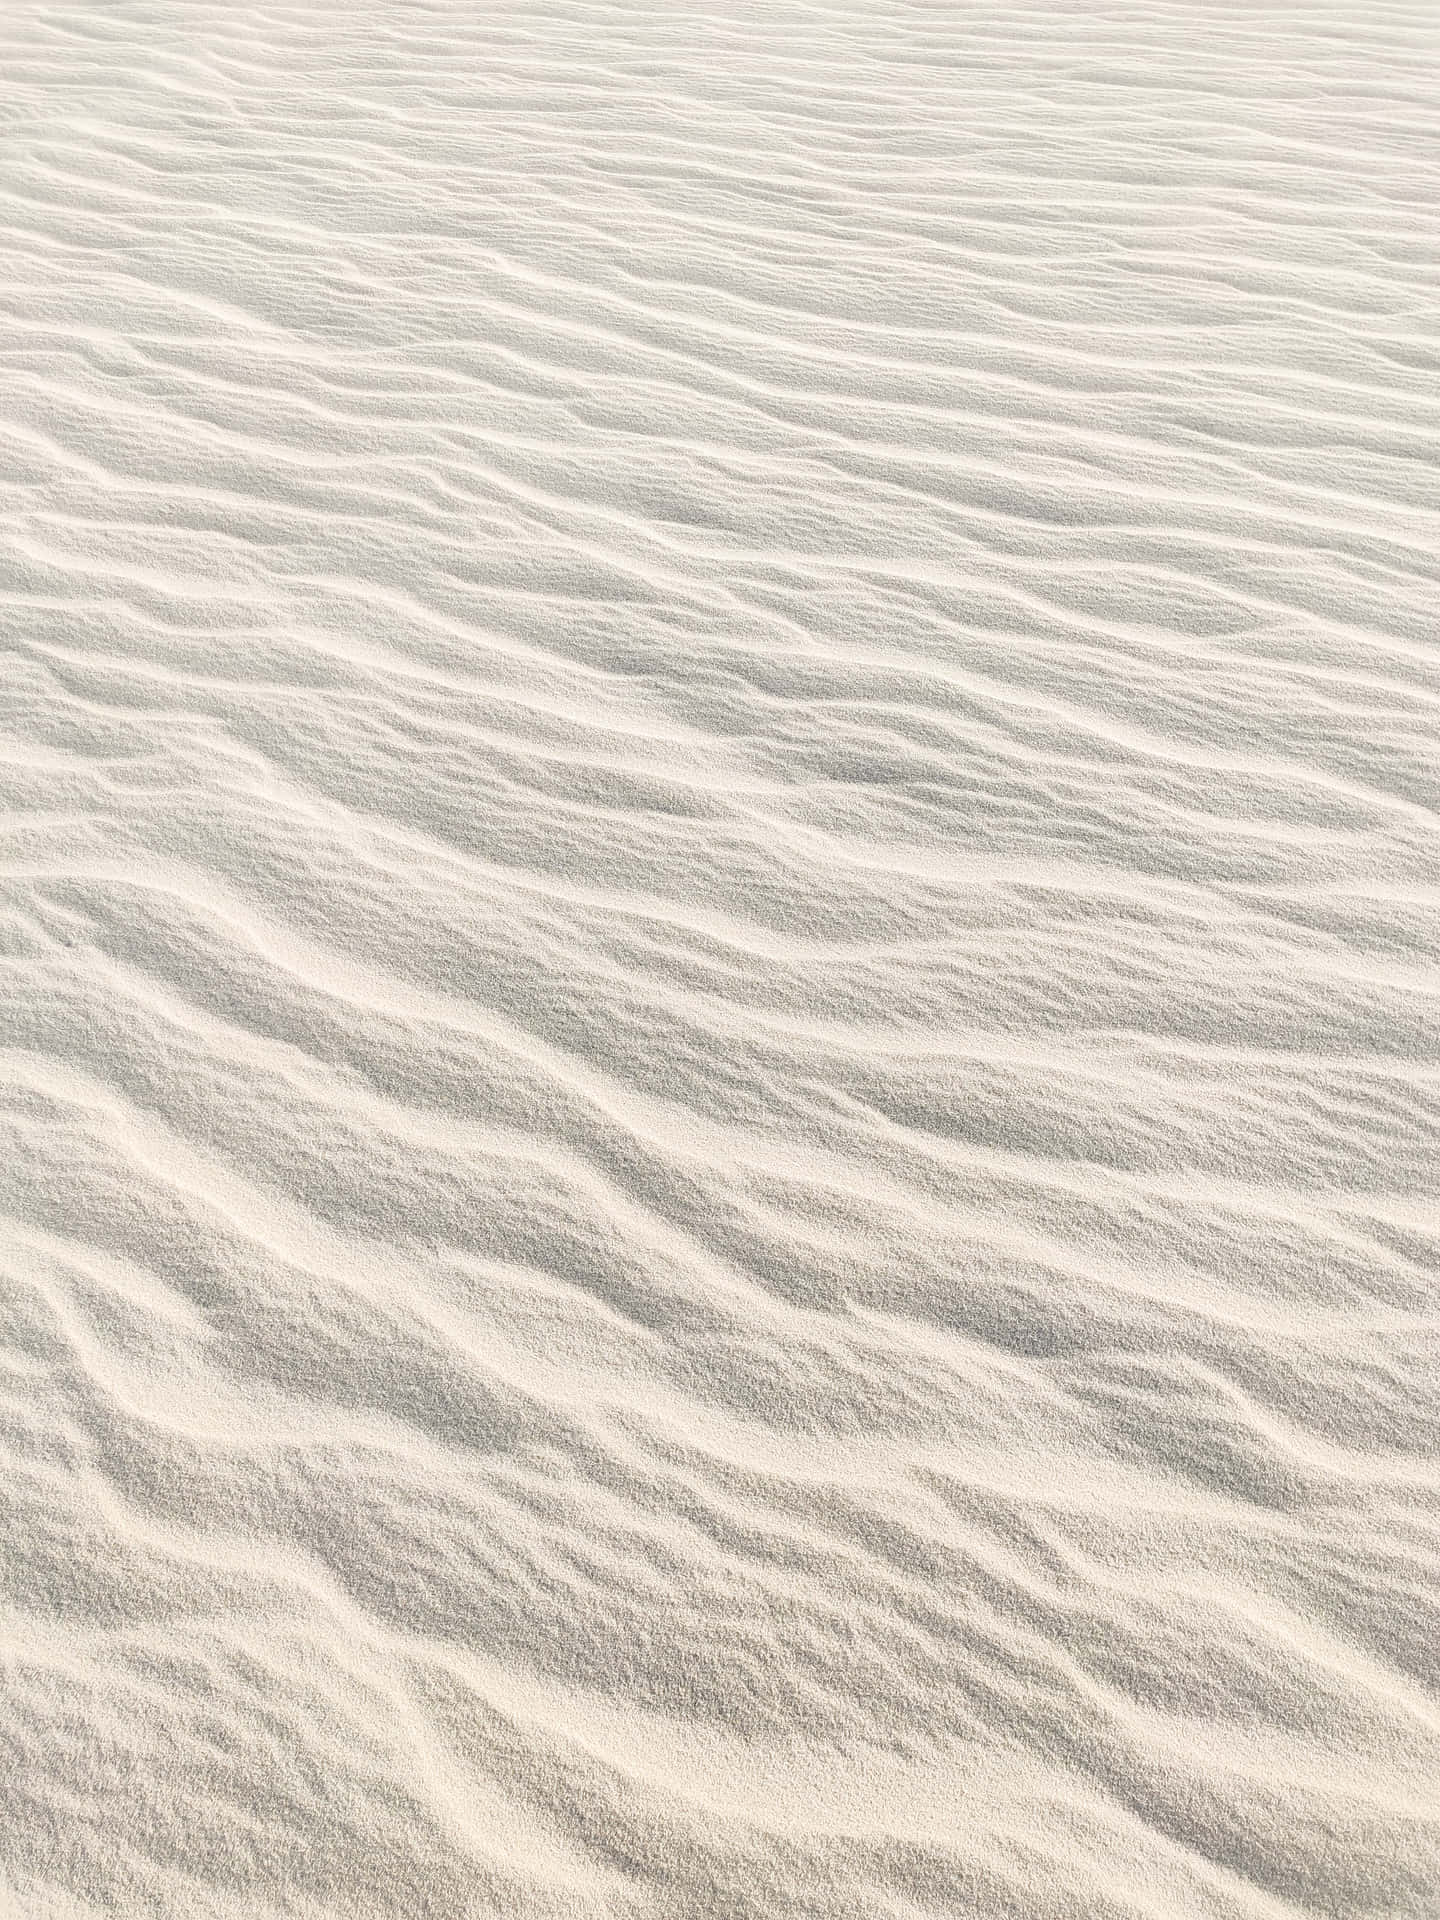 Hvid Sand Dune ørken Landskab Tapet Wallpaper